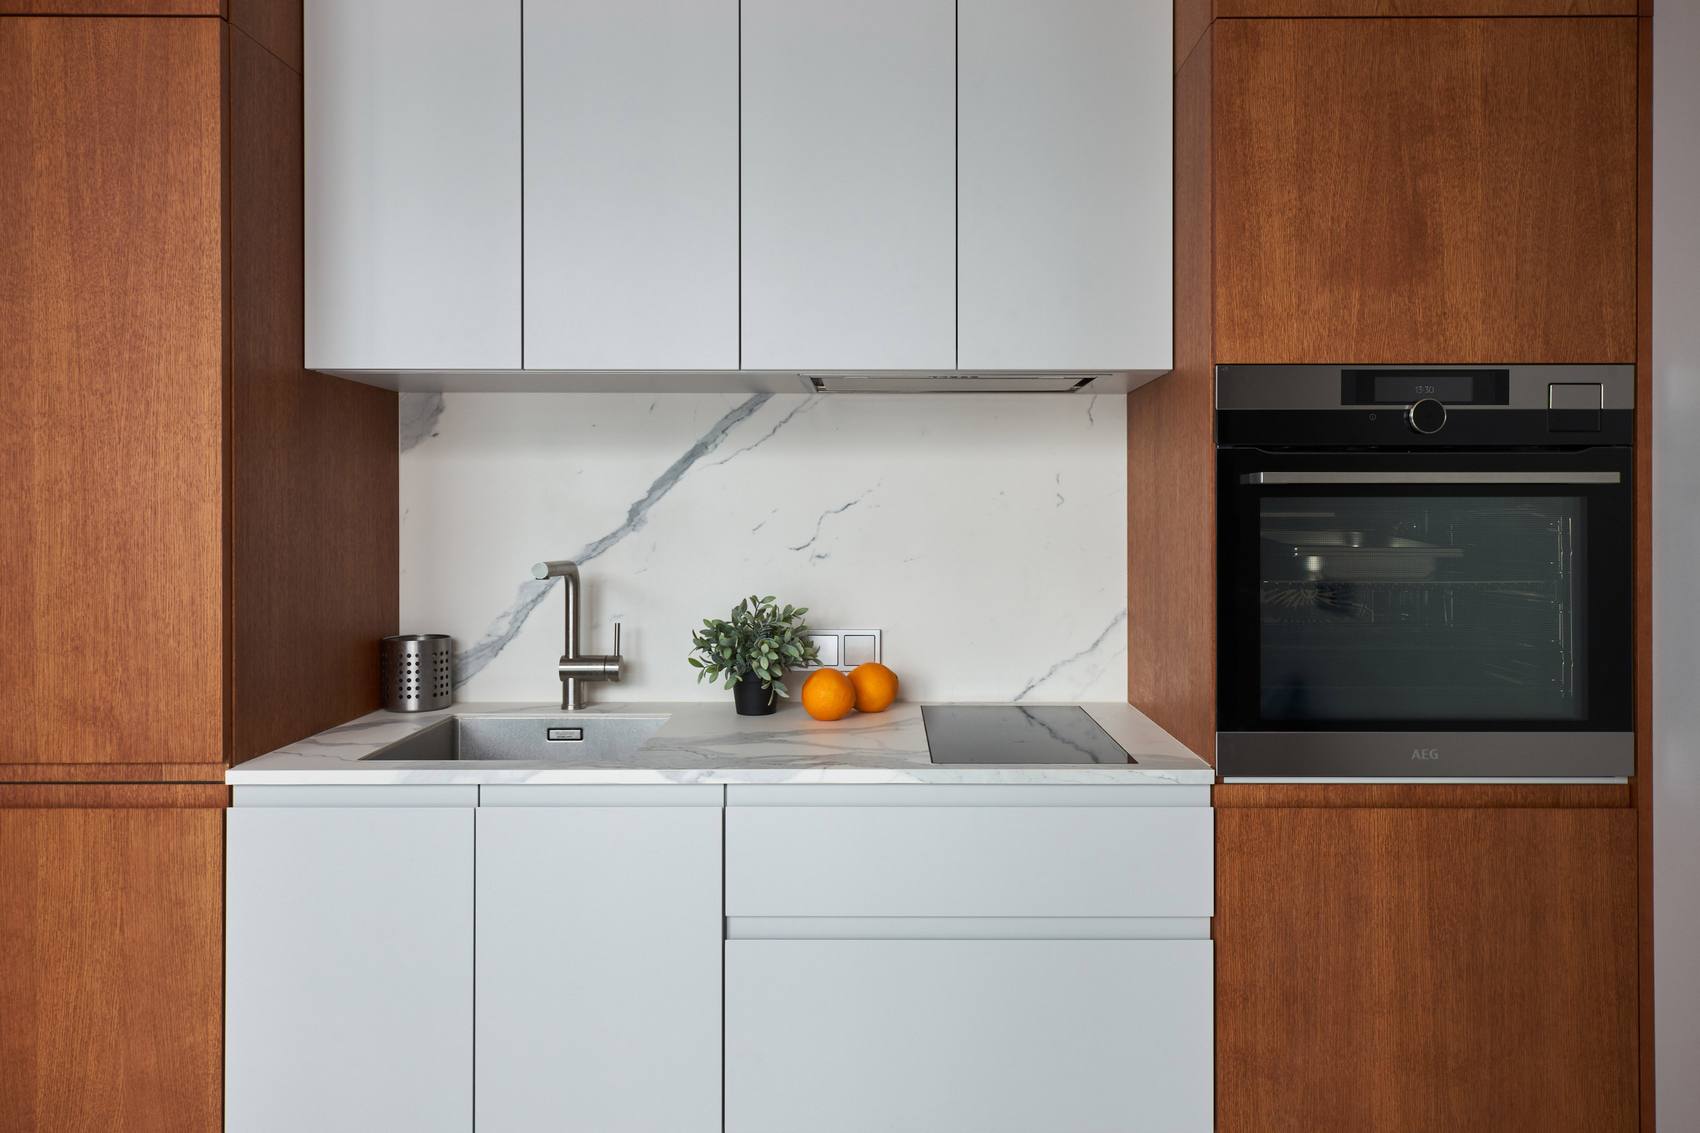 Phòng bếp lựa chọn thiết kế kiểu chữ I vừa tối ưu hóa không gian vừa tạo lối đi thông thoáng, đảm bảo đầy đủ tiện nghi nấu nướng cho nhu cầu của một người đàn ông đang sống một mình.